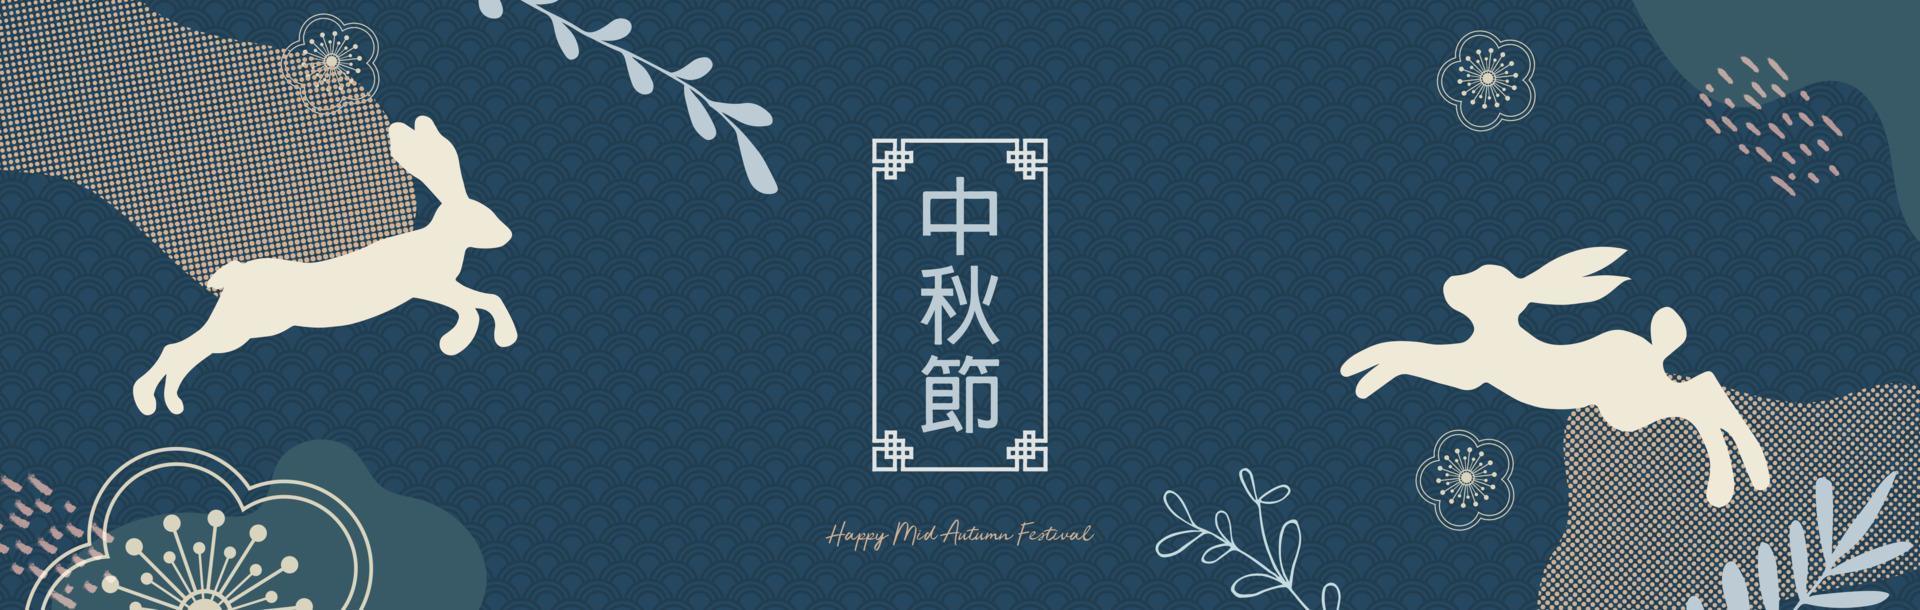 midhöstfestivalen trendig design med målad måne, månkaka, söta kaniner, växter och prickar, färgstänk på mörkblå bakgrund. översättning från kinesisk-mid-höstfestivalen. vektor